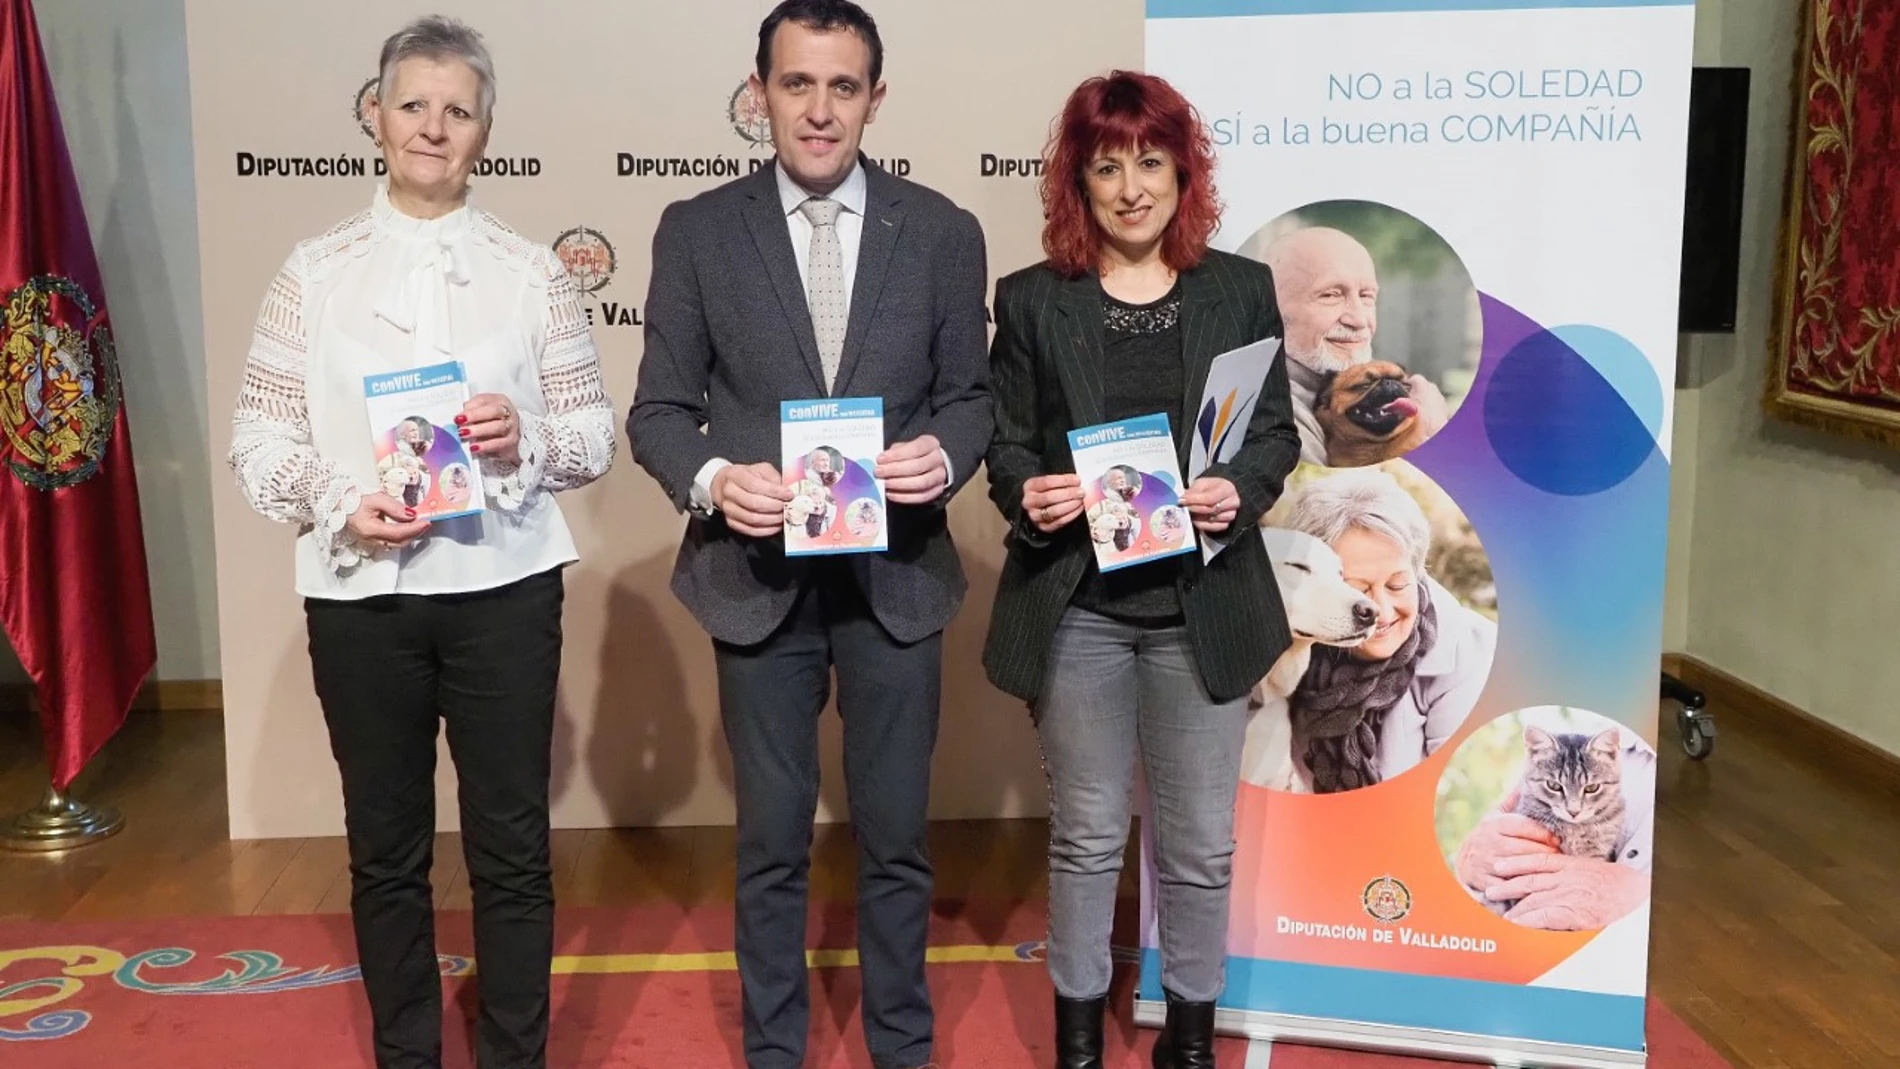 El presidente de la Diputación de Valladolid, Conrado Íscar, presenta el programa "conVIVE con MASCOTAS" junto a Nieves Andrés Ramírez y Adela Cabezas Mayo